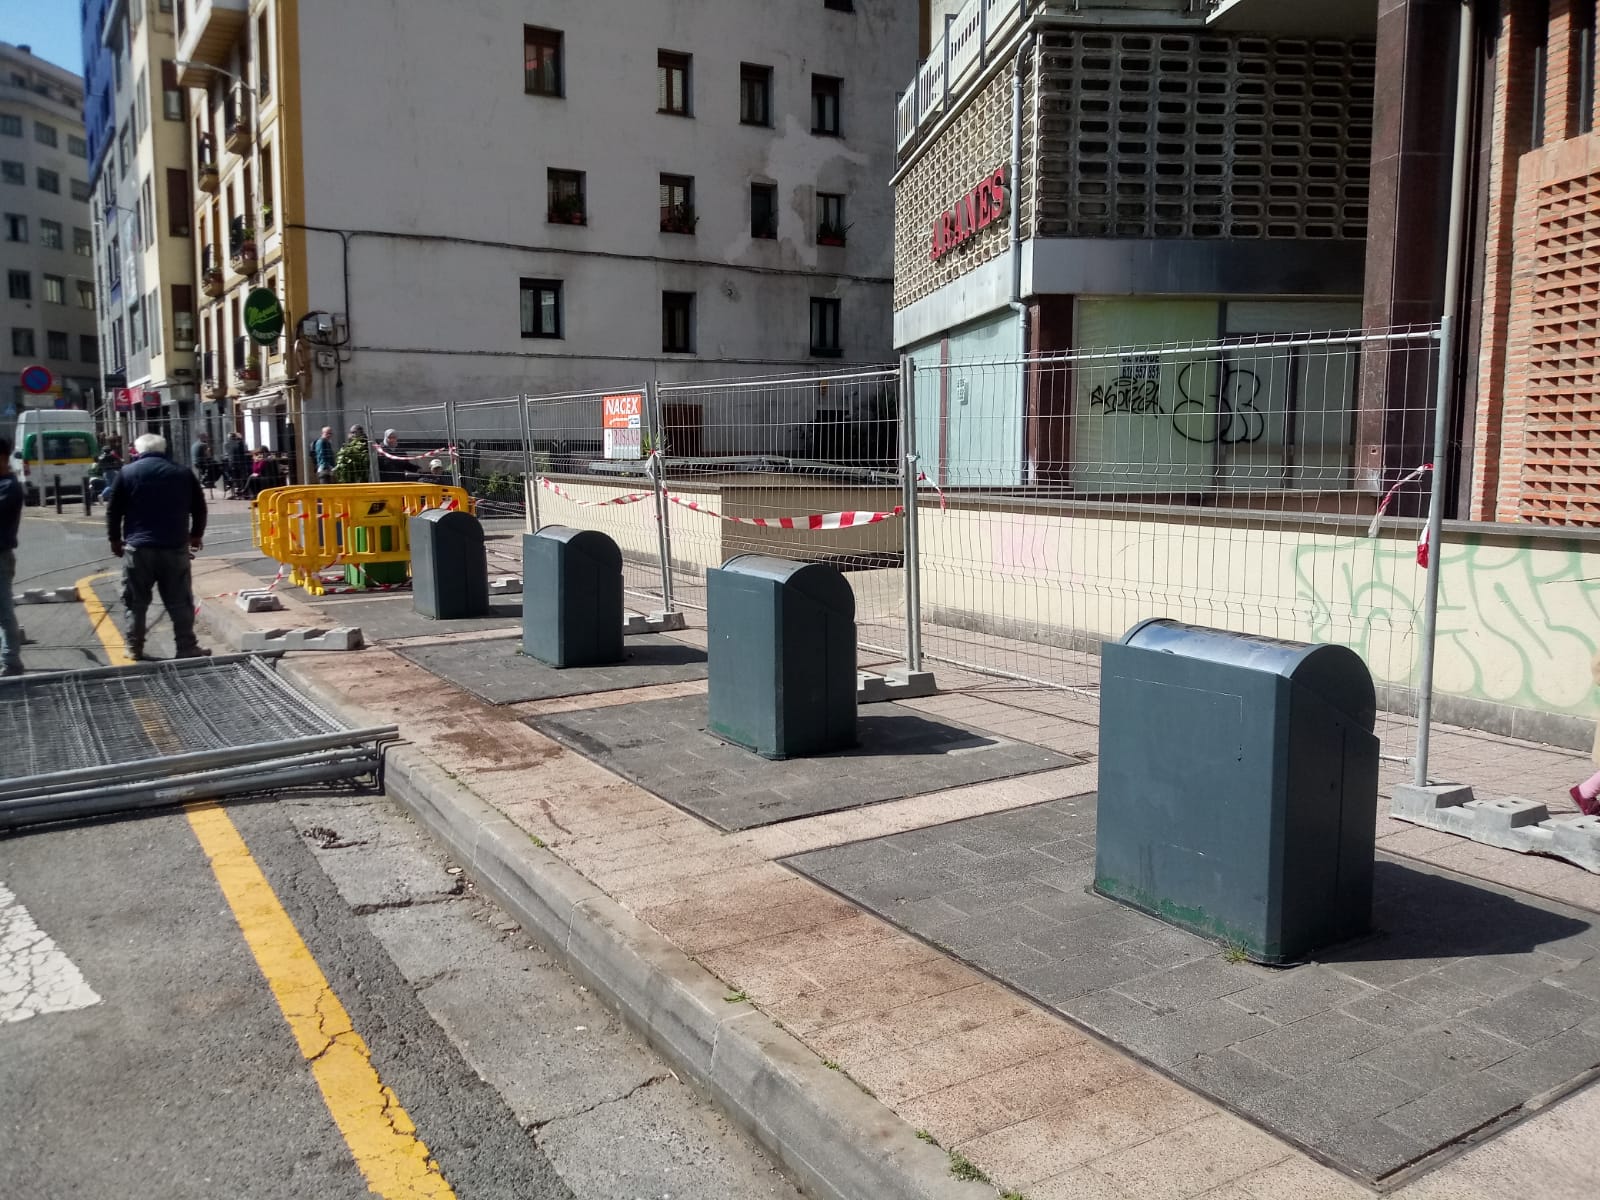 La Mancomunidad de Debabarrena va a proceder a la renovación de los contenedores soterrados en varios puntos de Eibar